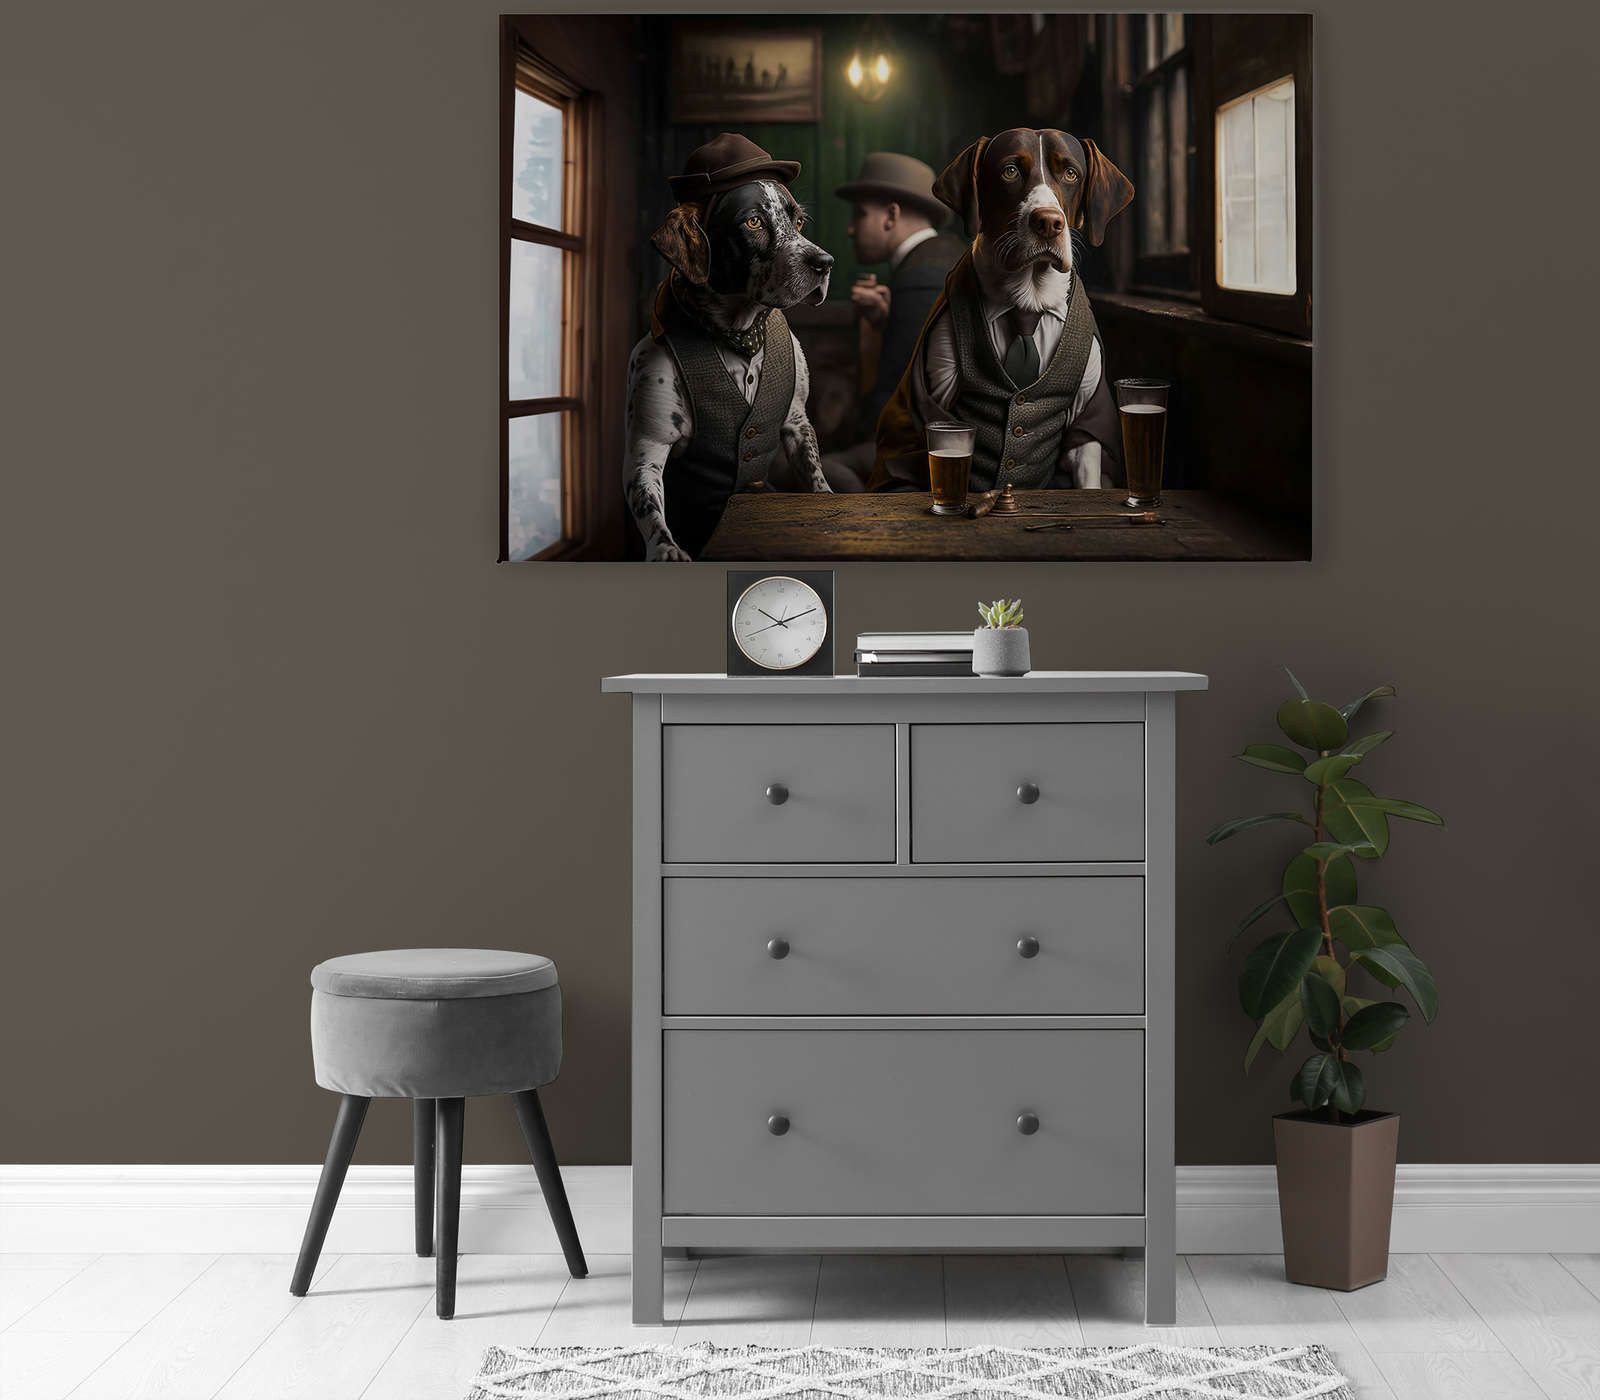             KI Canvas painting »Doggy Bar« - 120 cm x 80 cm
        